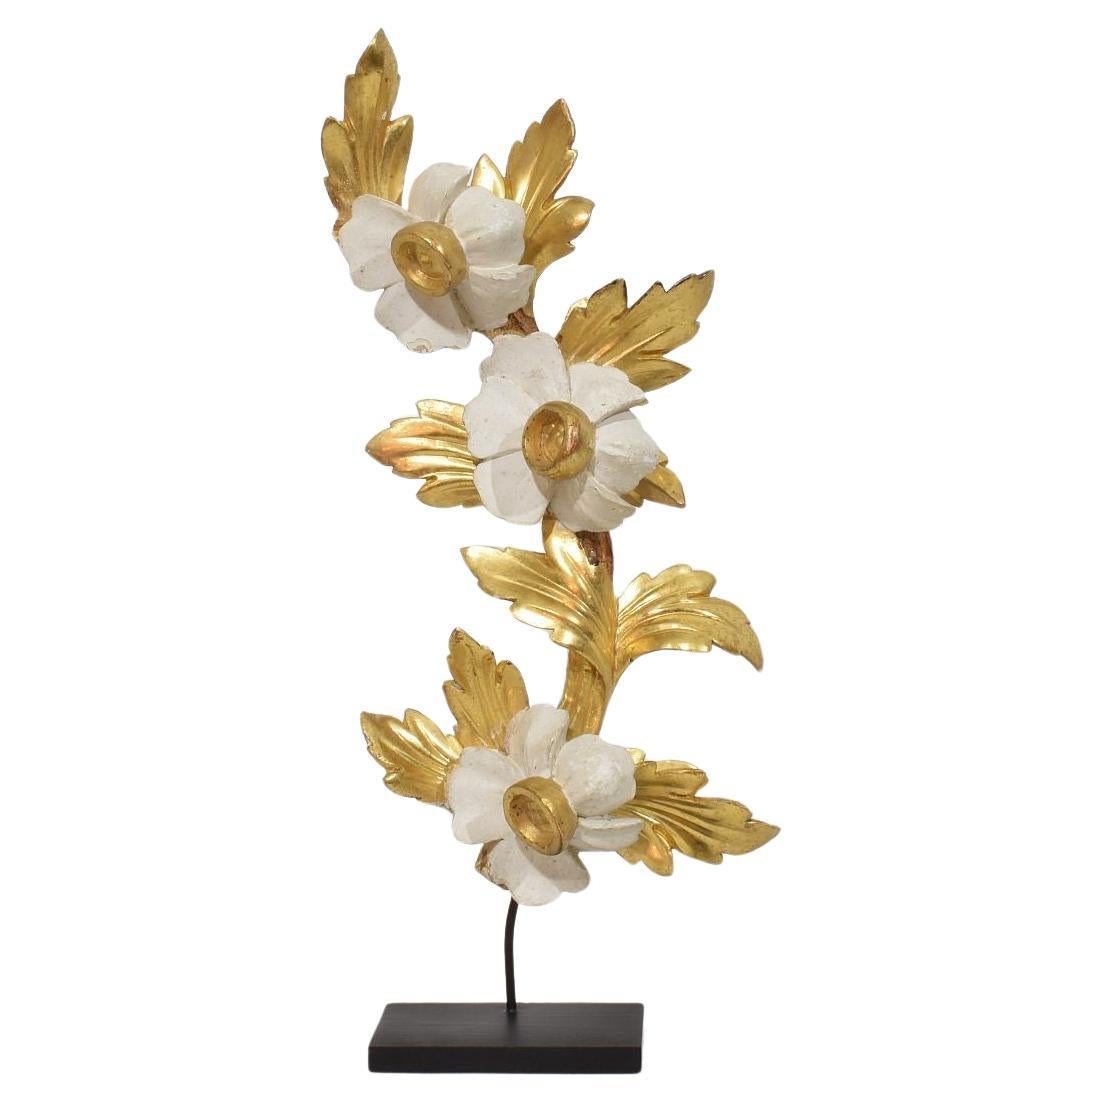 Ornement floral italien du 18/19e siècle en bois doré sculpté à la main